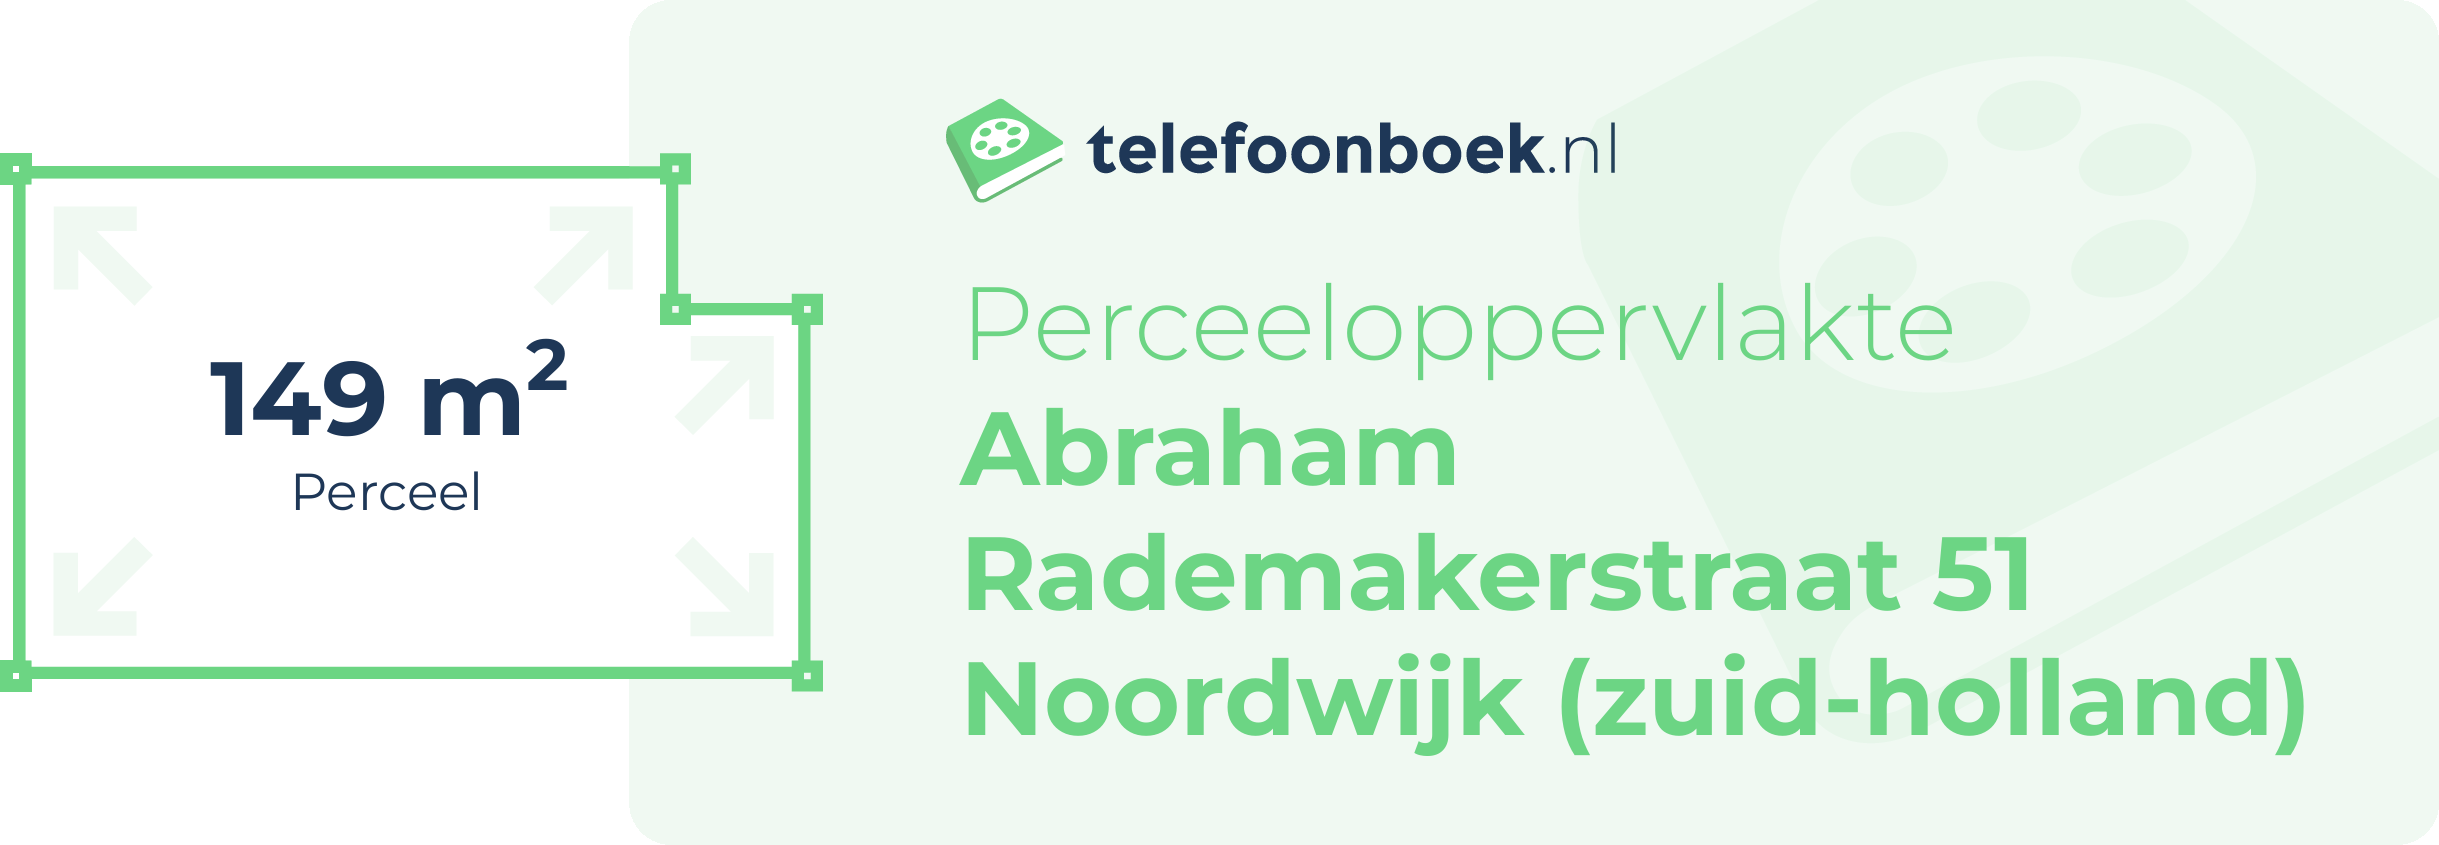 Perceeloppervlakte Abraham Rademakerstraat 51 Noordwijk (Zuid-Holland)